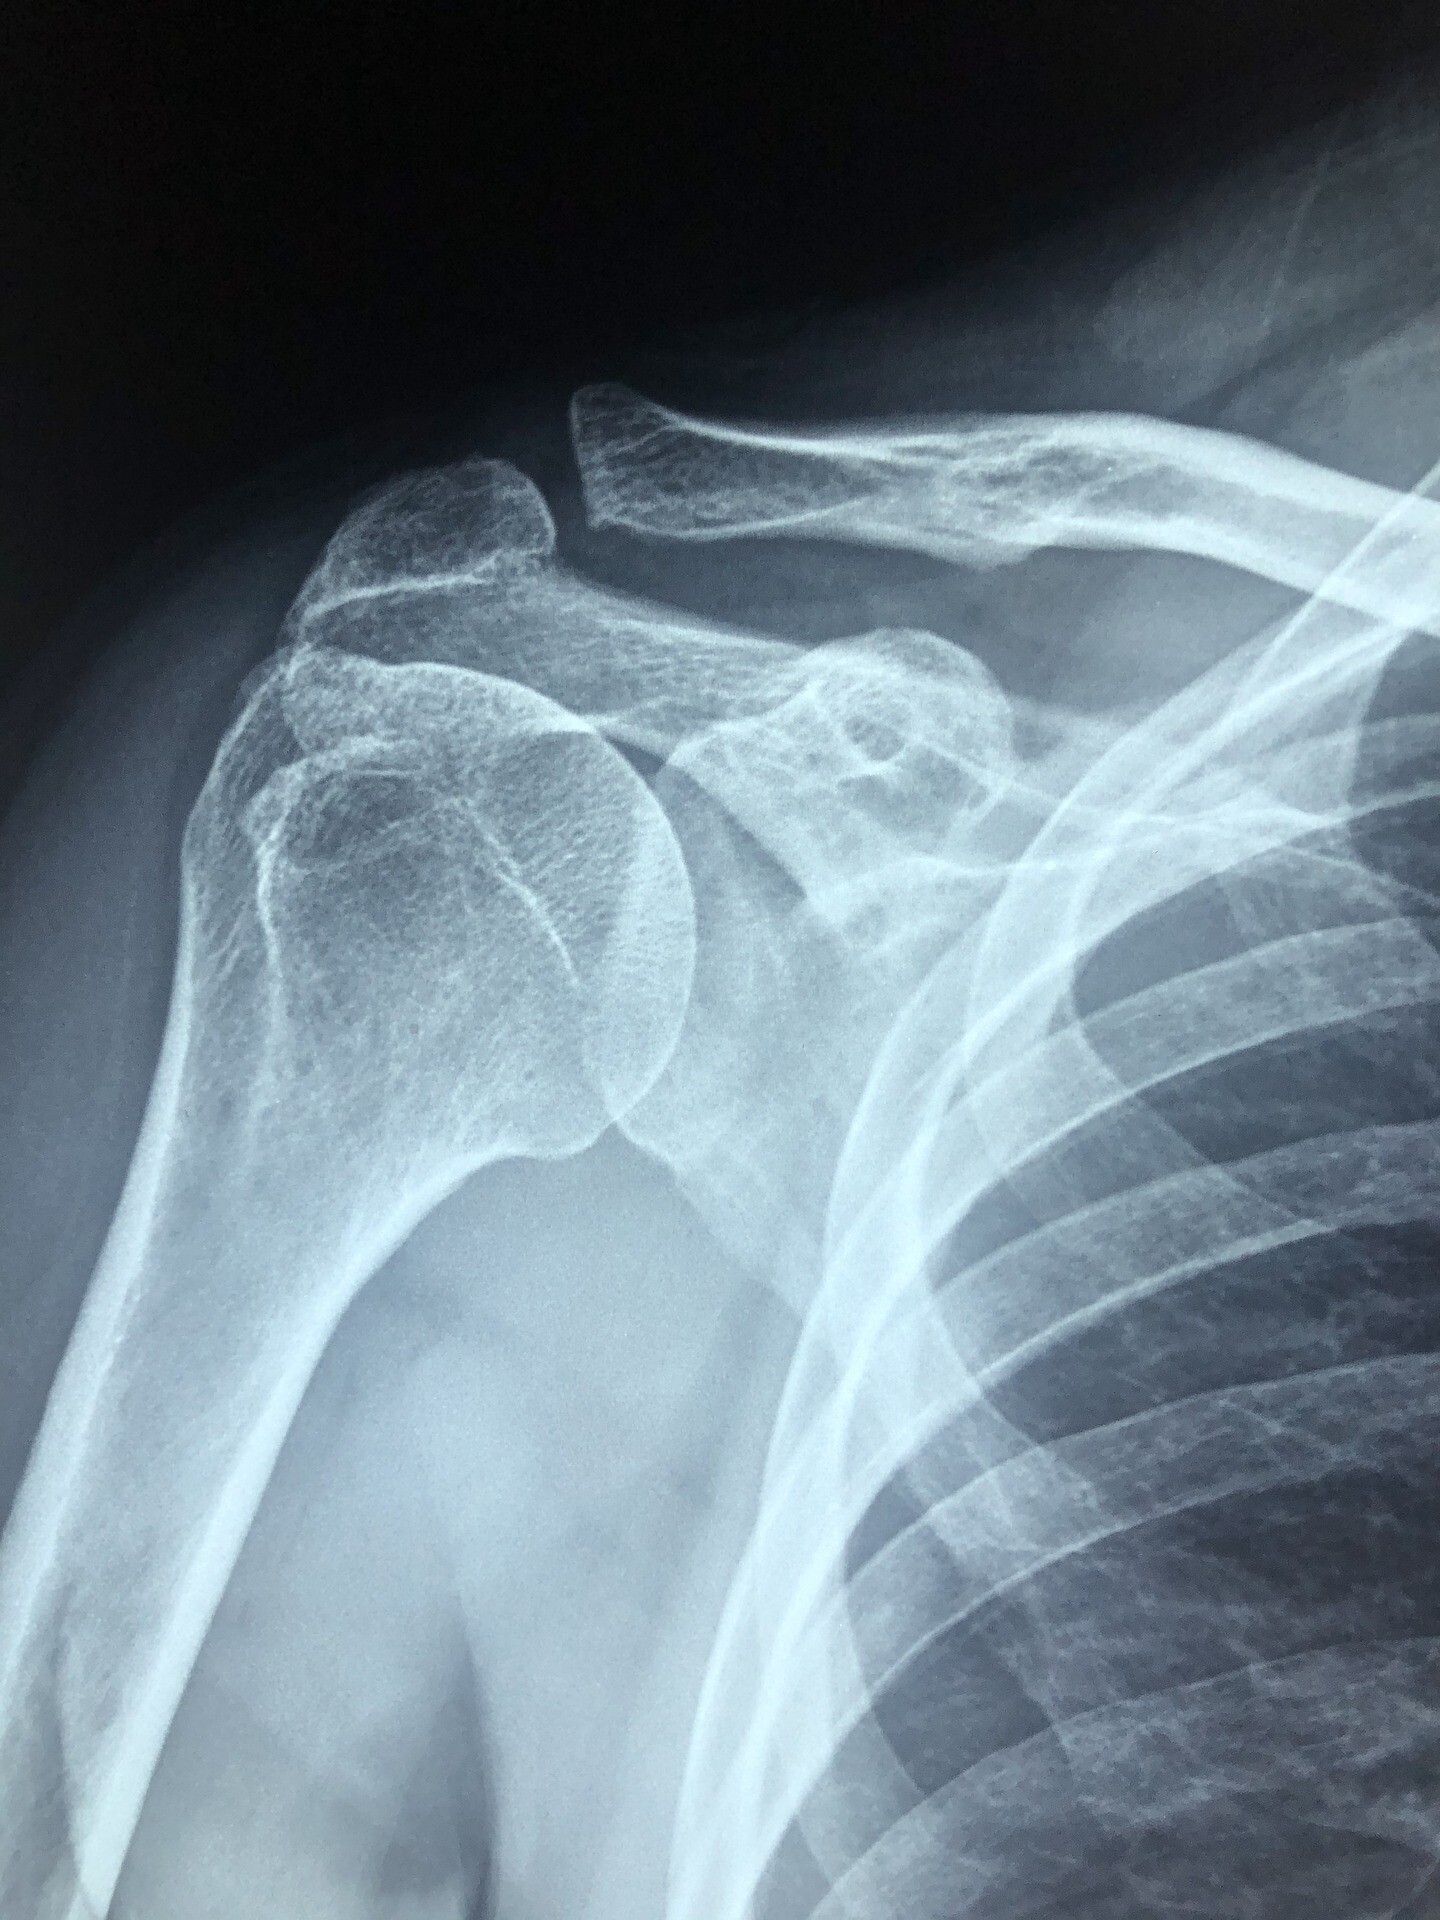 röntgenbild schulter